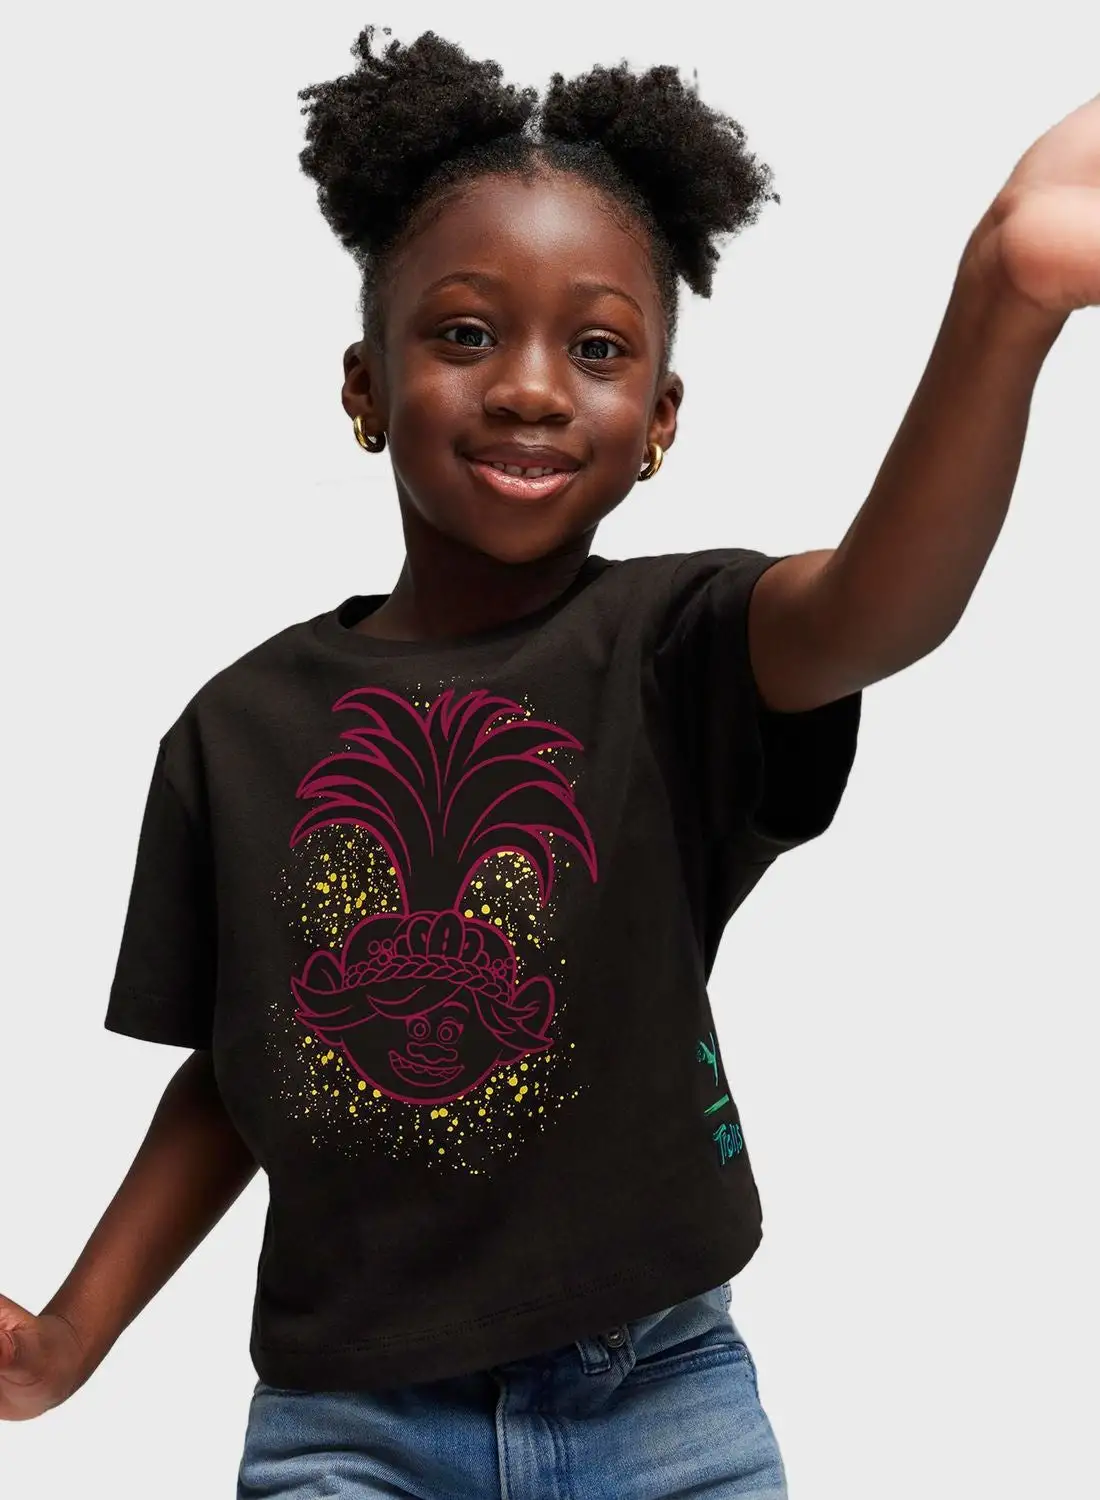 PUMA Kids Trolls Graphic T-Shirt